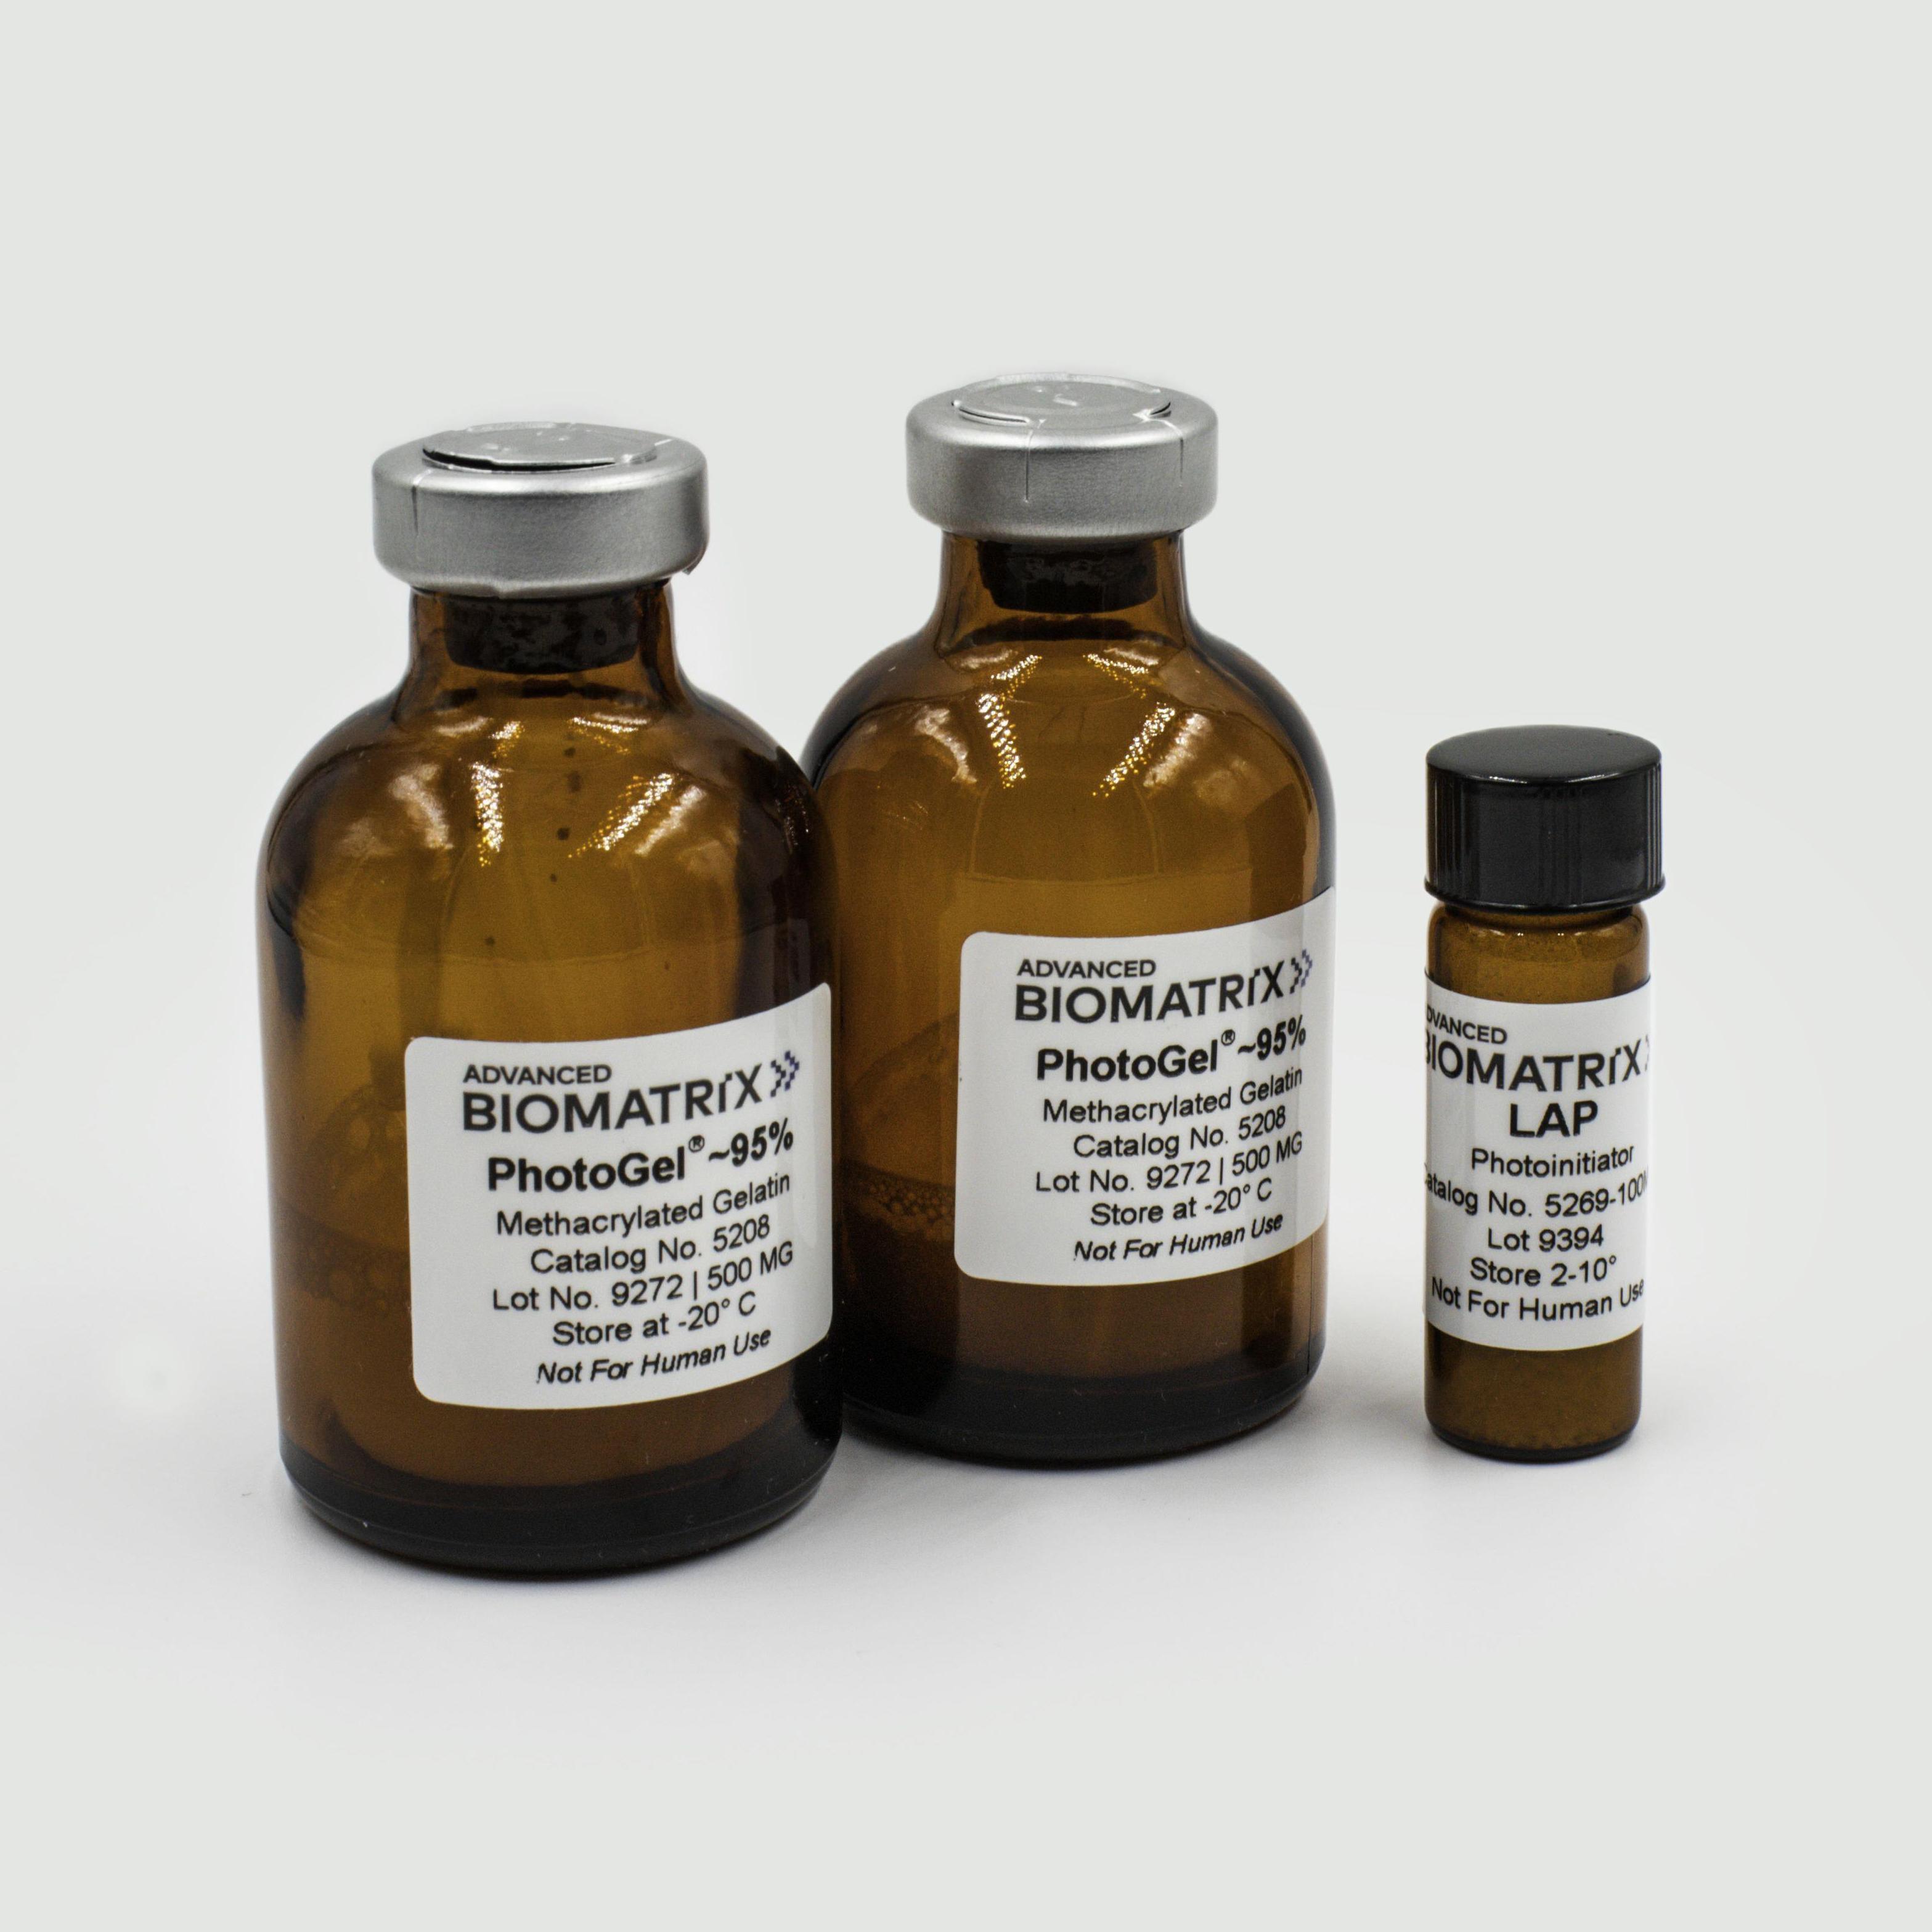 photogel methacrylated gelatin with LAP kit